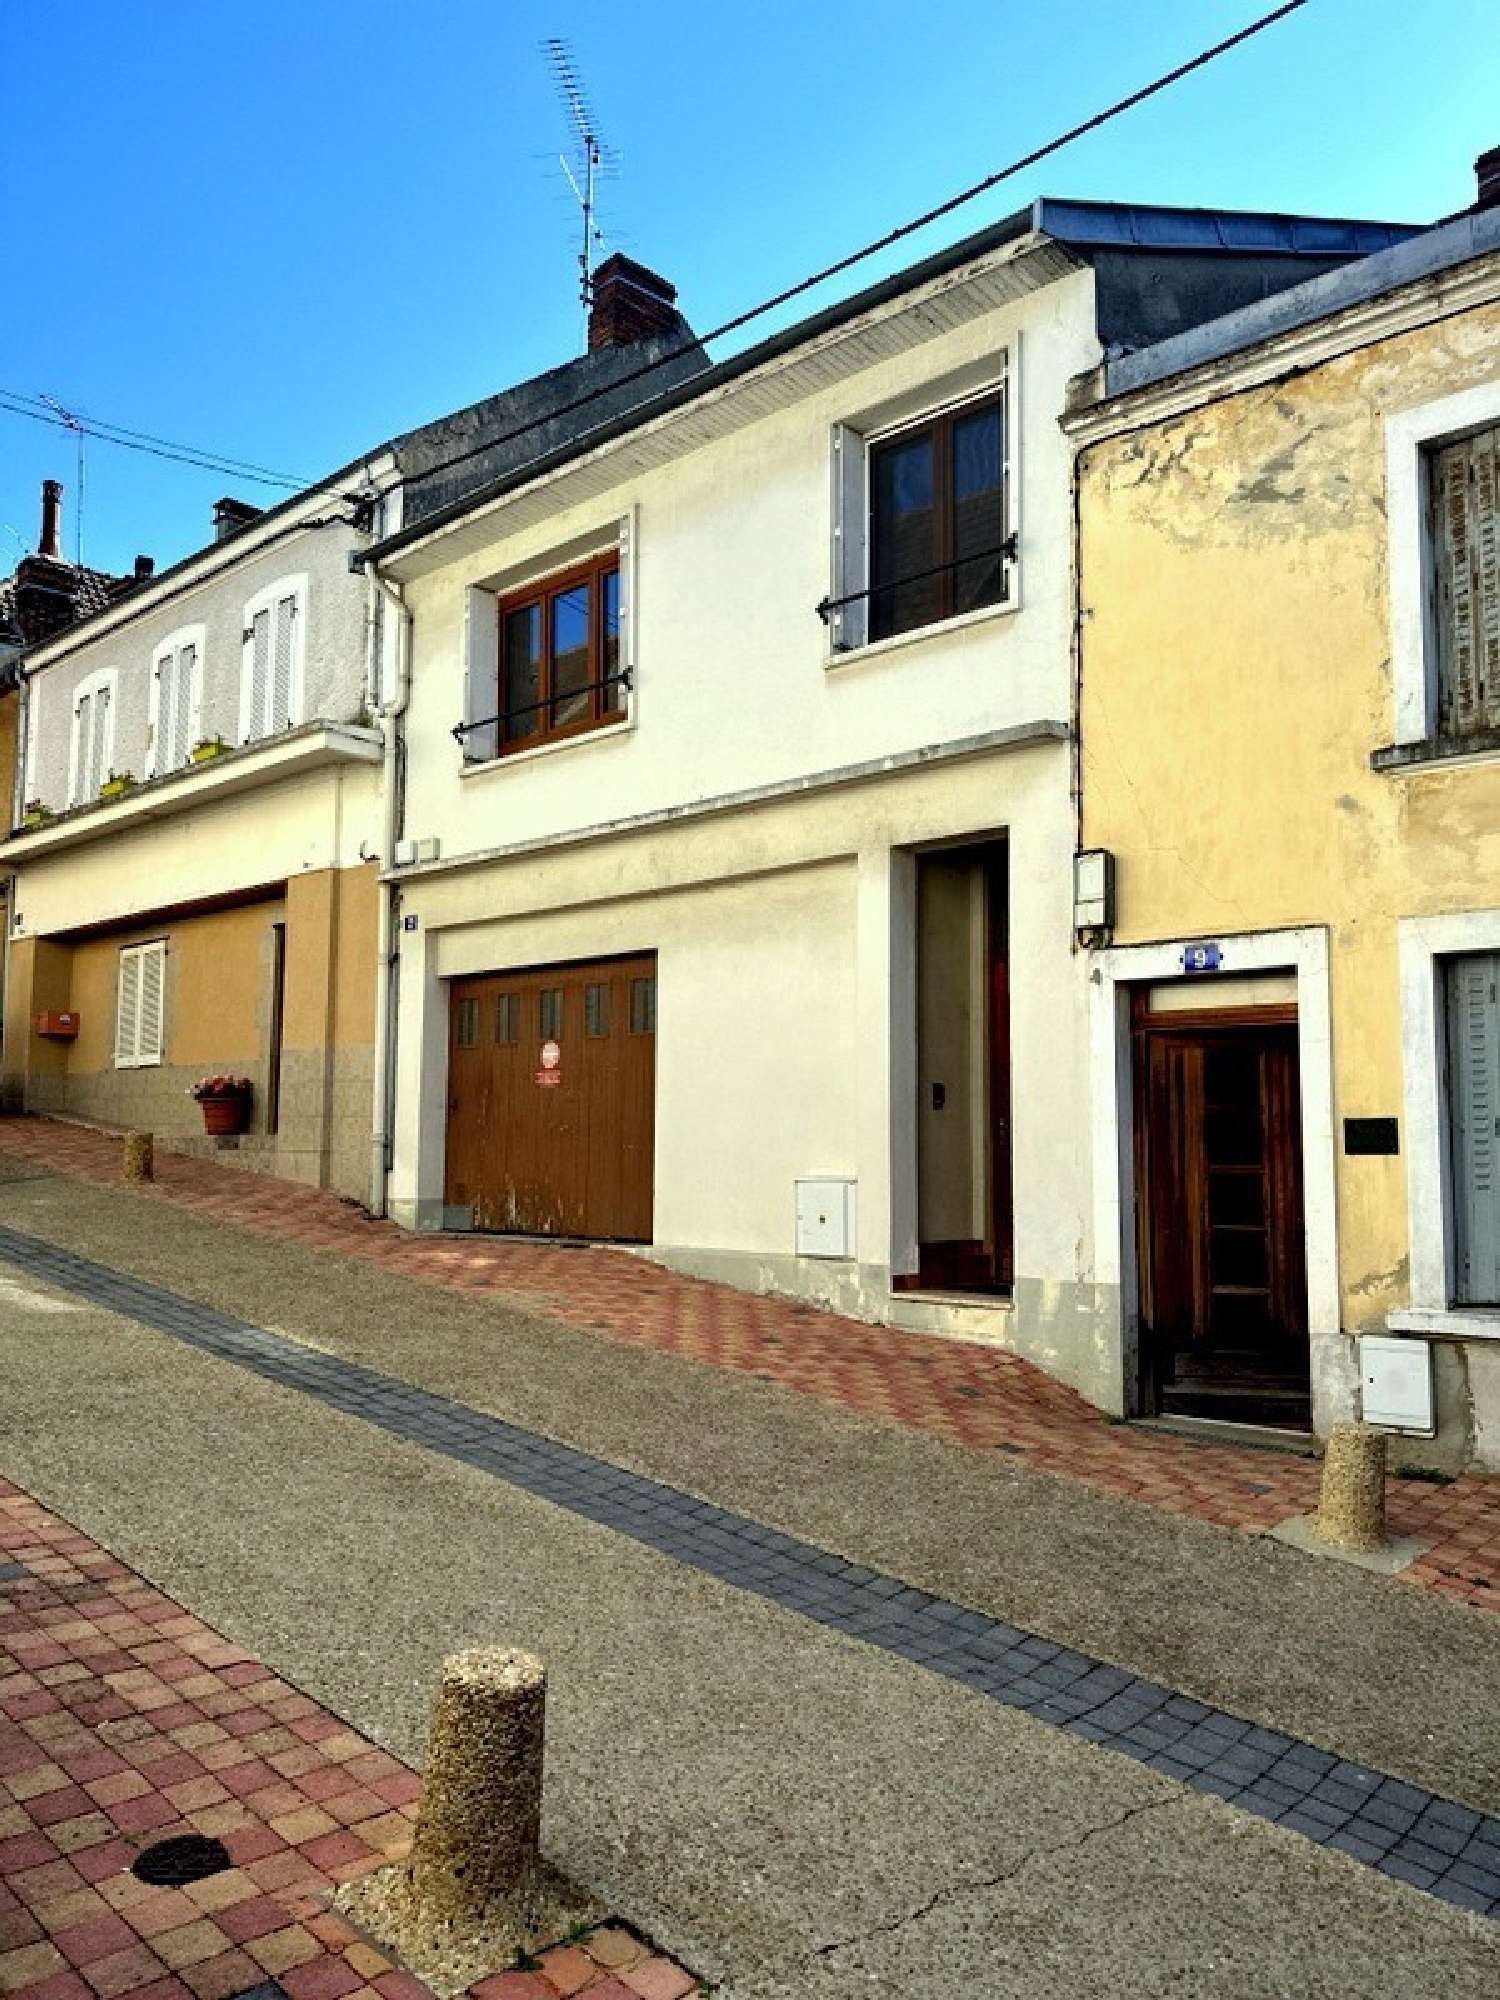  for sale house Néris-les-Bains Allier 1